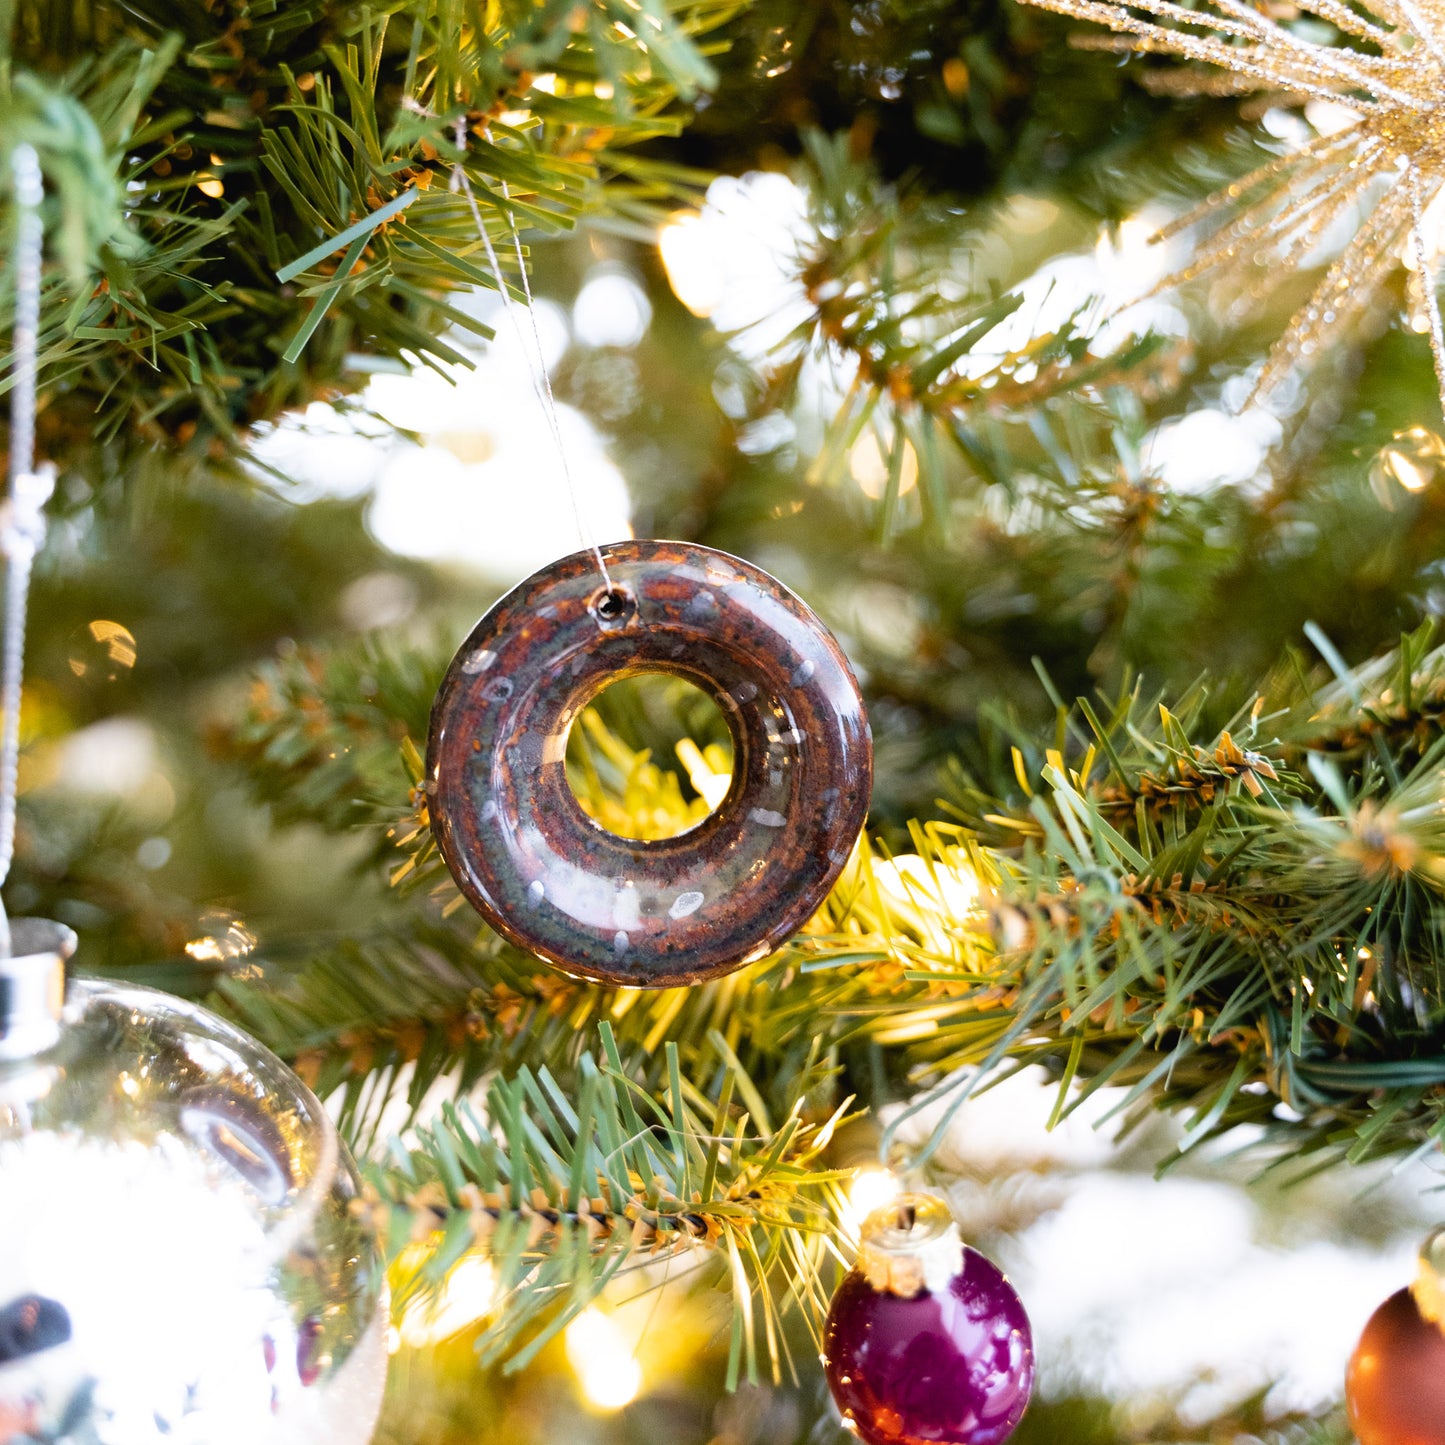 Mini donut ornaments